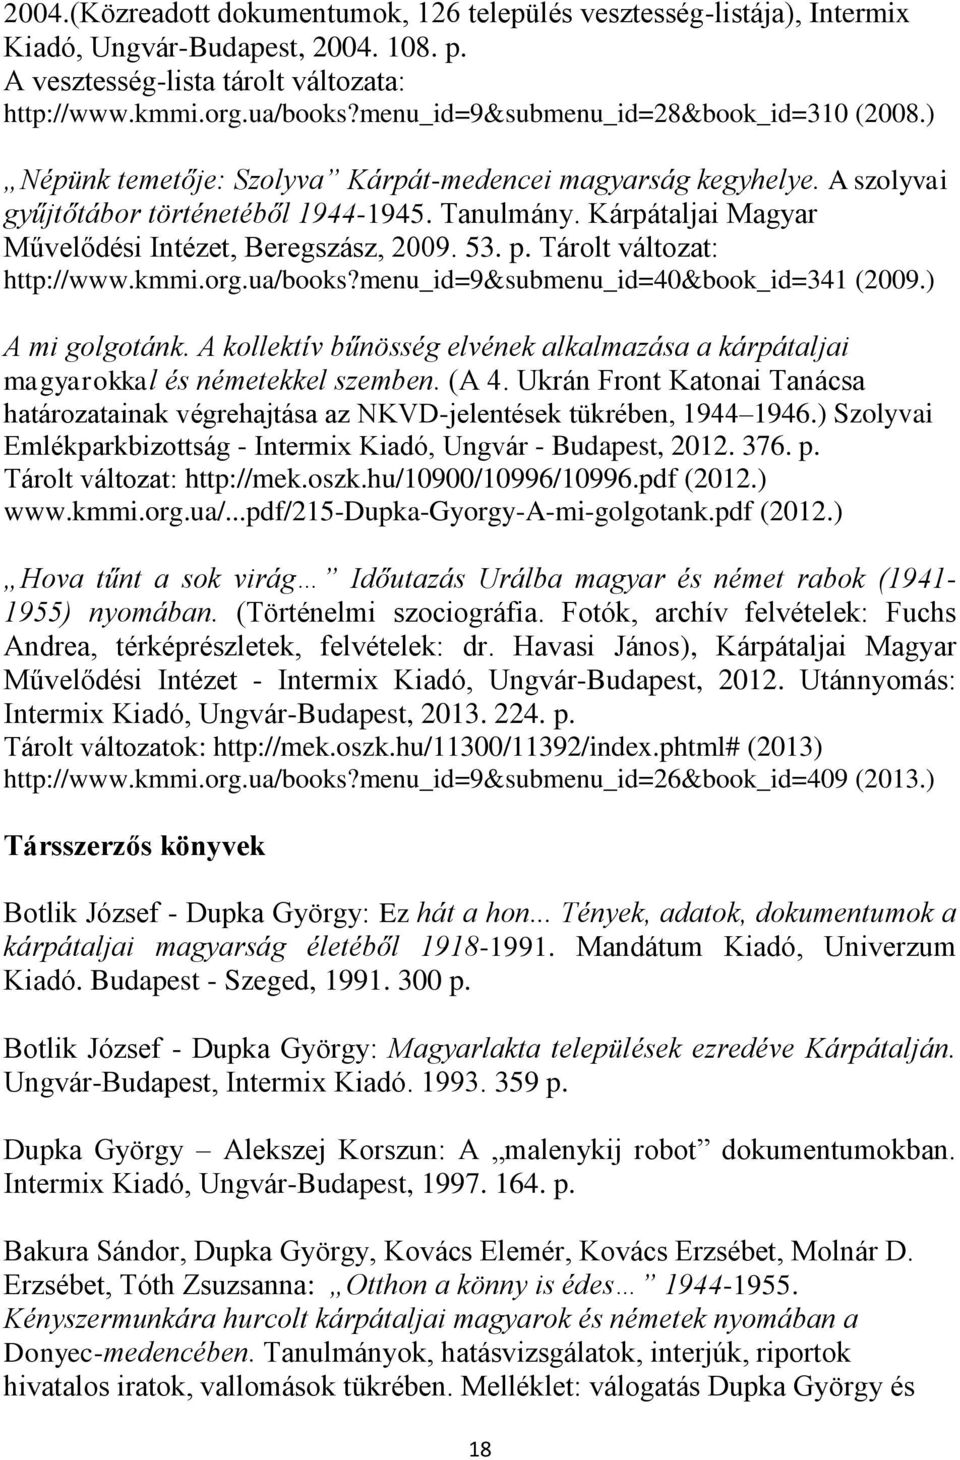 Kárpátaljai Magyar Művelődési Intézet, Beregszász, 2009. 53. p. Tárolt változat: http://www.kmmi.org.ua/books?menu_id=9&submenu_id=40&book_id=341 (2009.) A mi golgotánk.